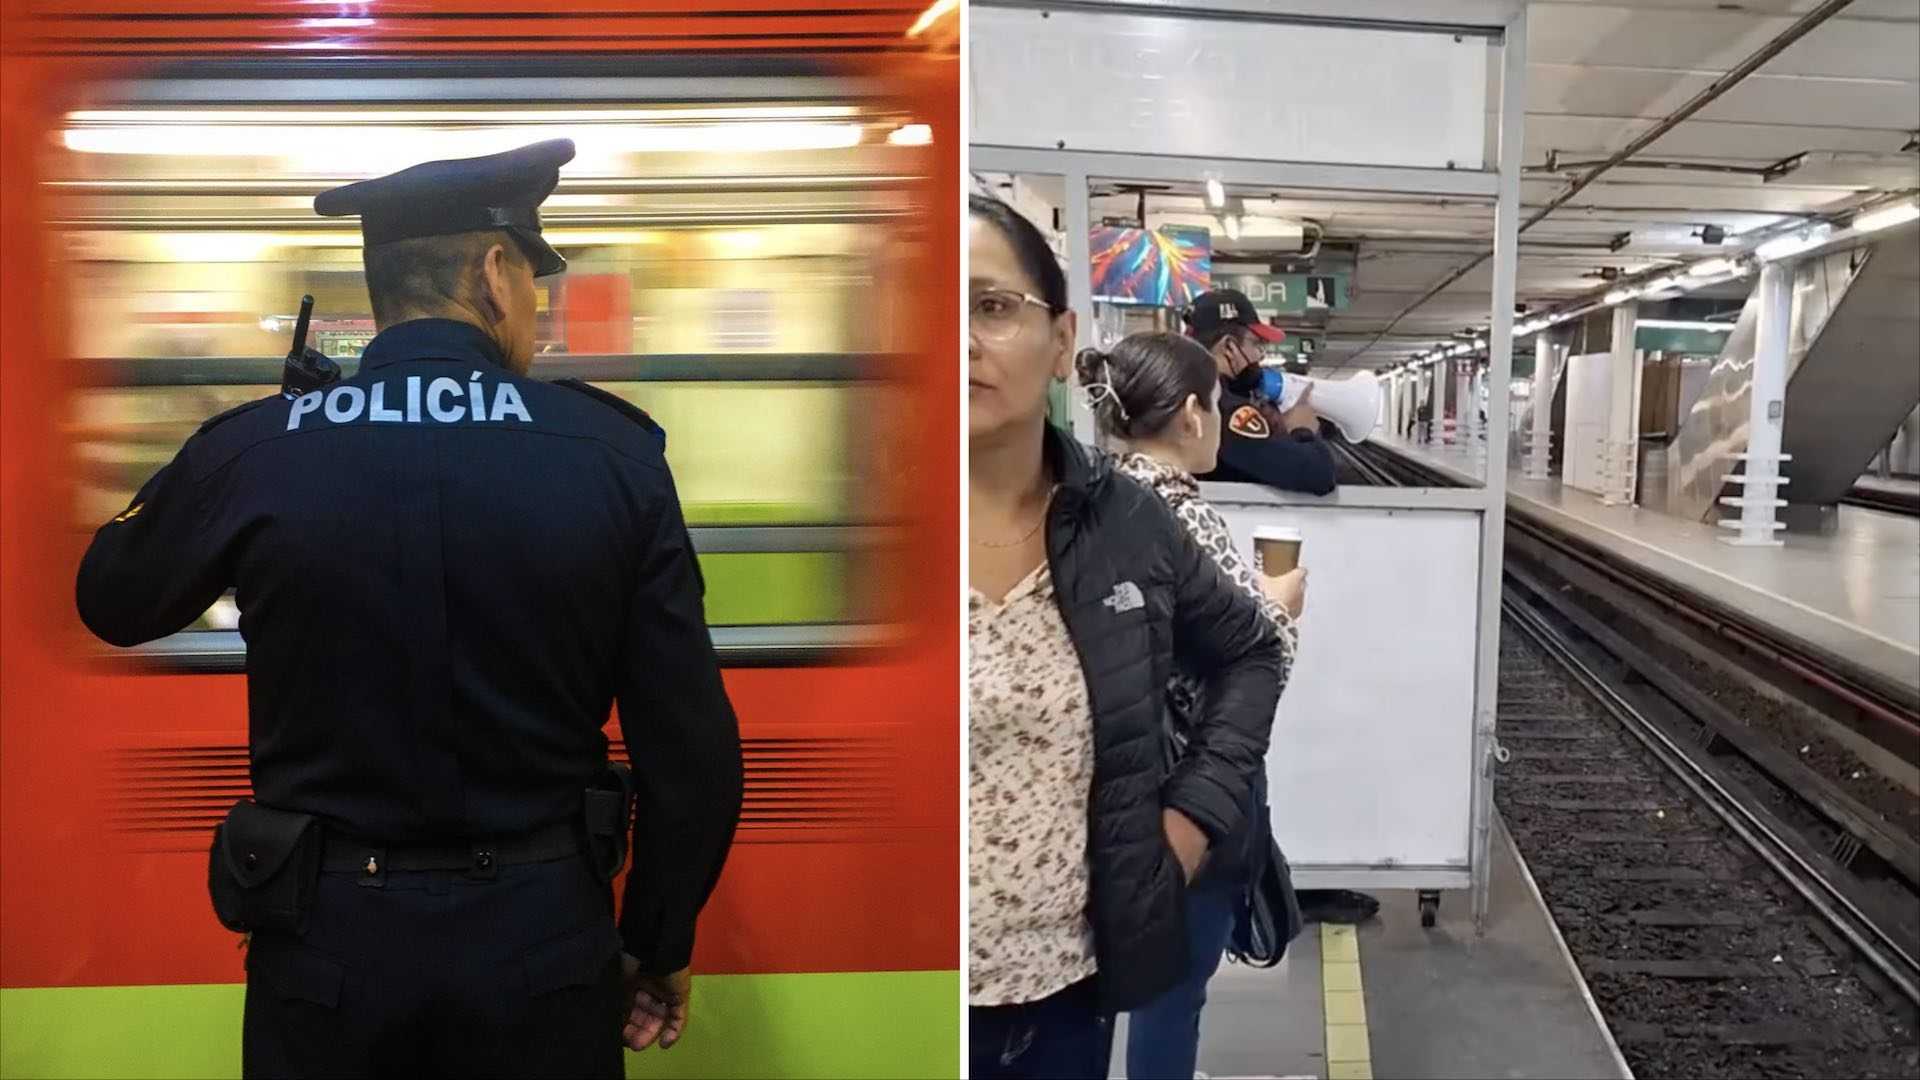 Policía anima a los usuarios del Metro con sus cómicas instrucciones.